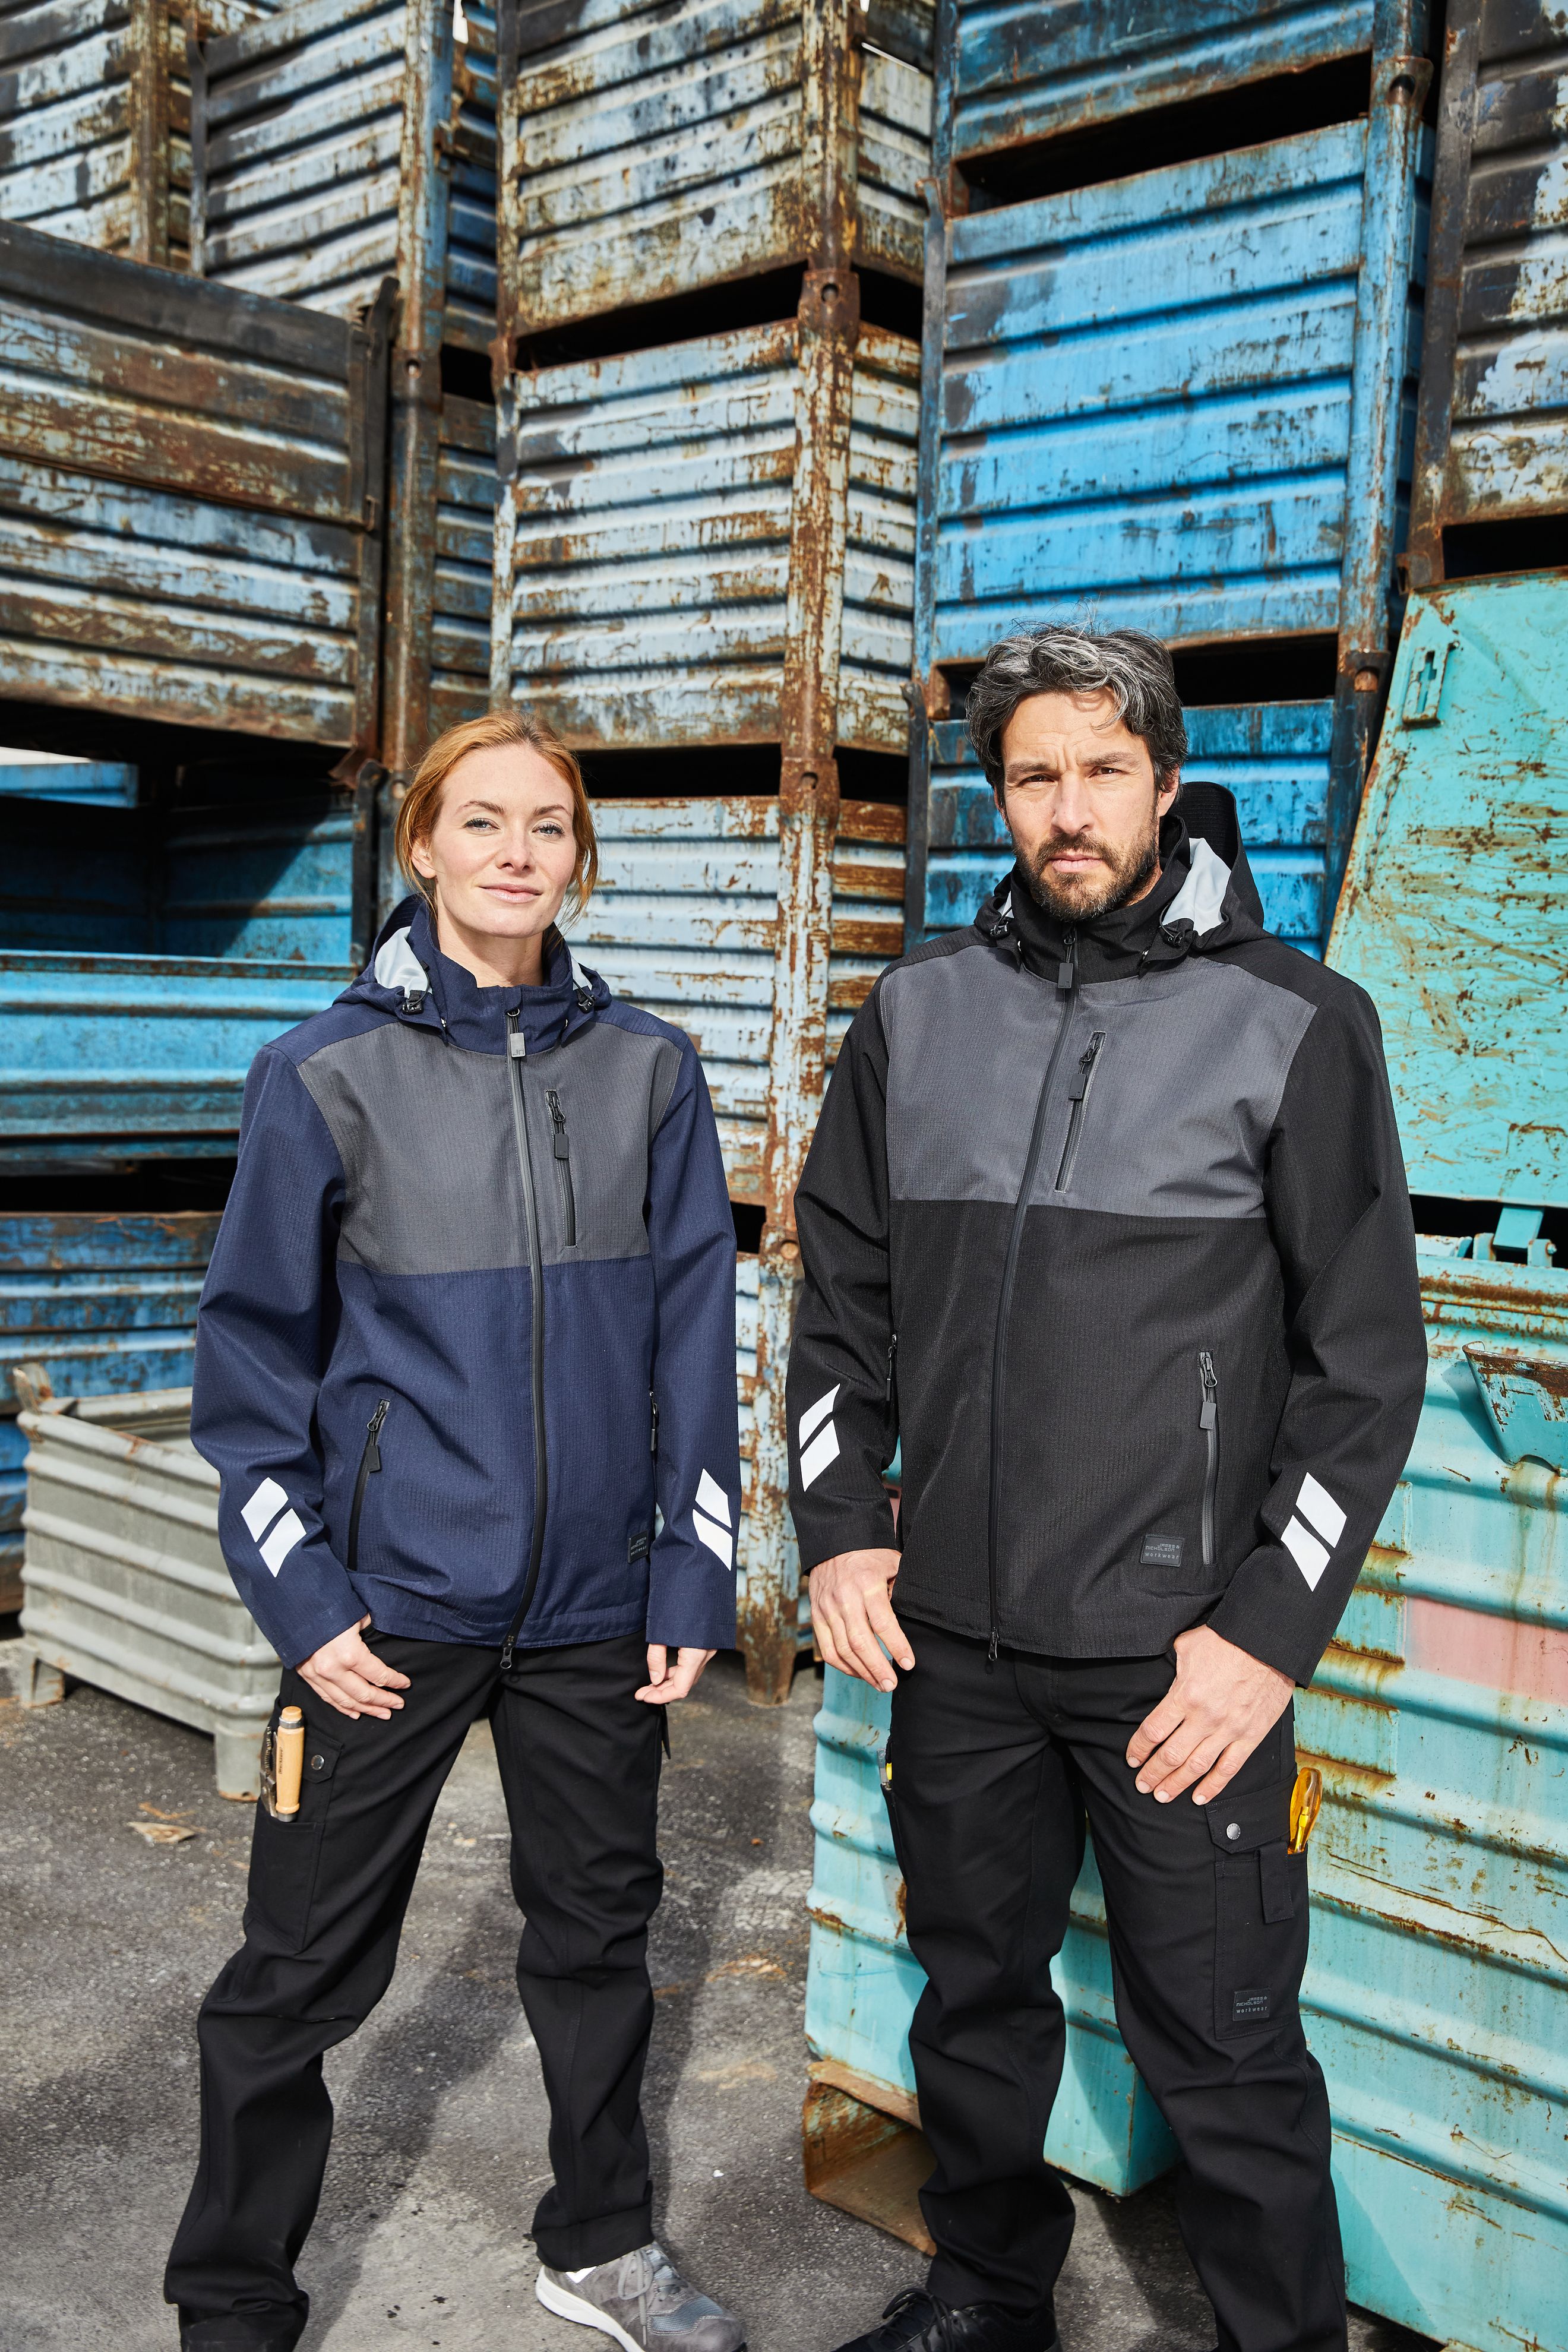 Hardshell Workwear Jacket JN1814 Professionelle, wind- und wasserdichte, atmungsaktive Arbeitsjacke für extreme Wetterbedingungen